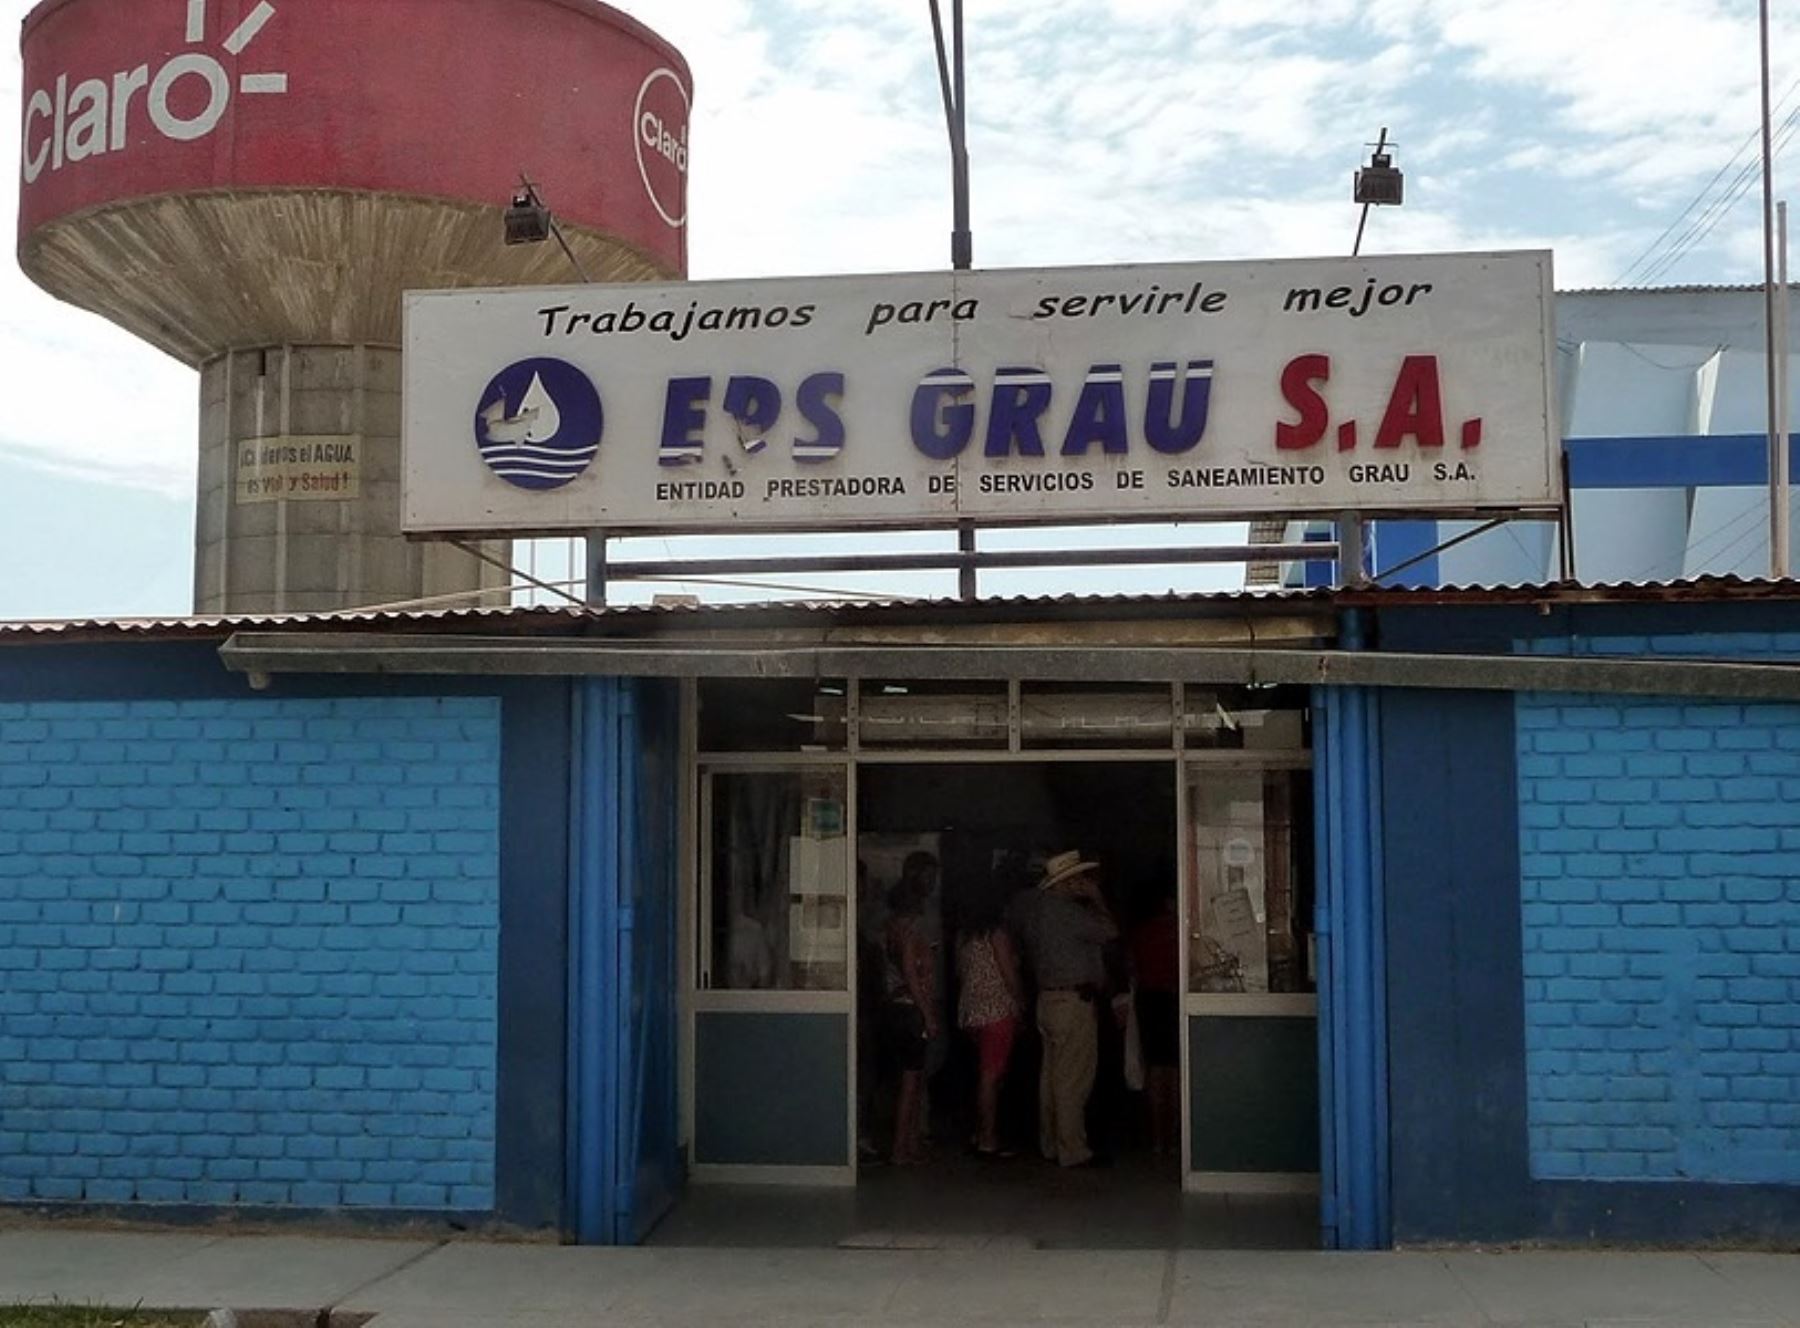 Otass asumió la administración temporal de la EPS Grau con el fin de garantizar el servicio de agua potable en Piura, y prepararla ante el inminente Fenómeno El Niño.